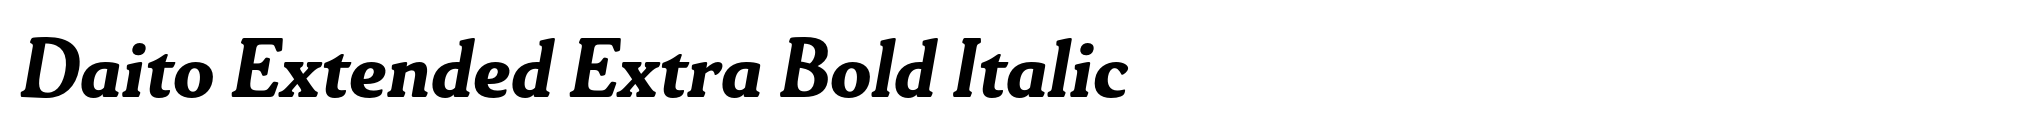 Daito Extended Extra Bold Italic image